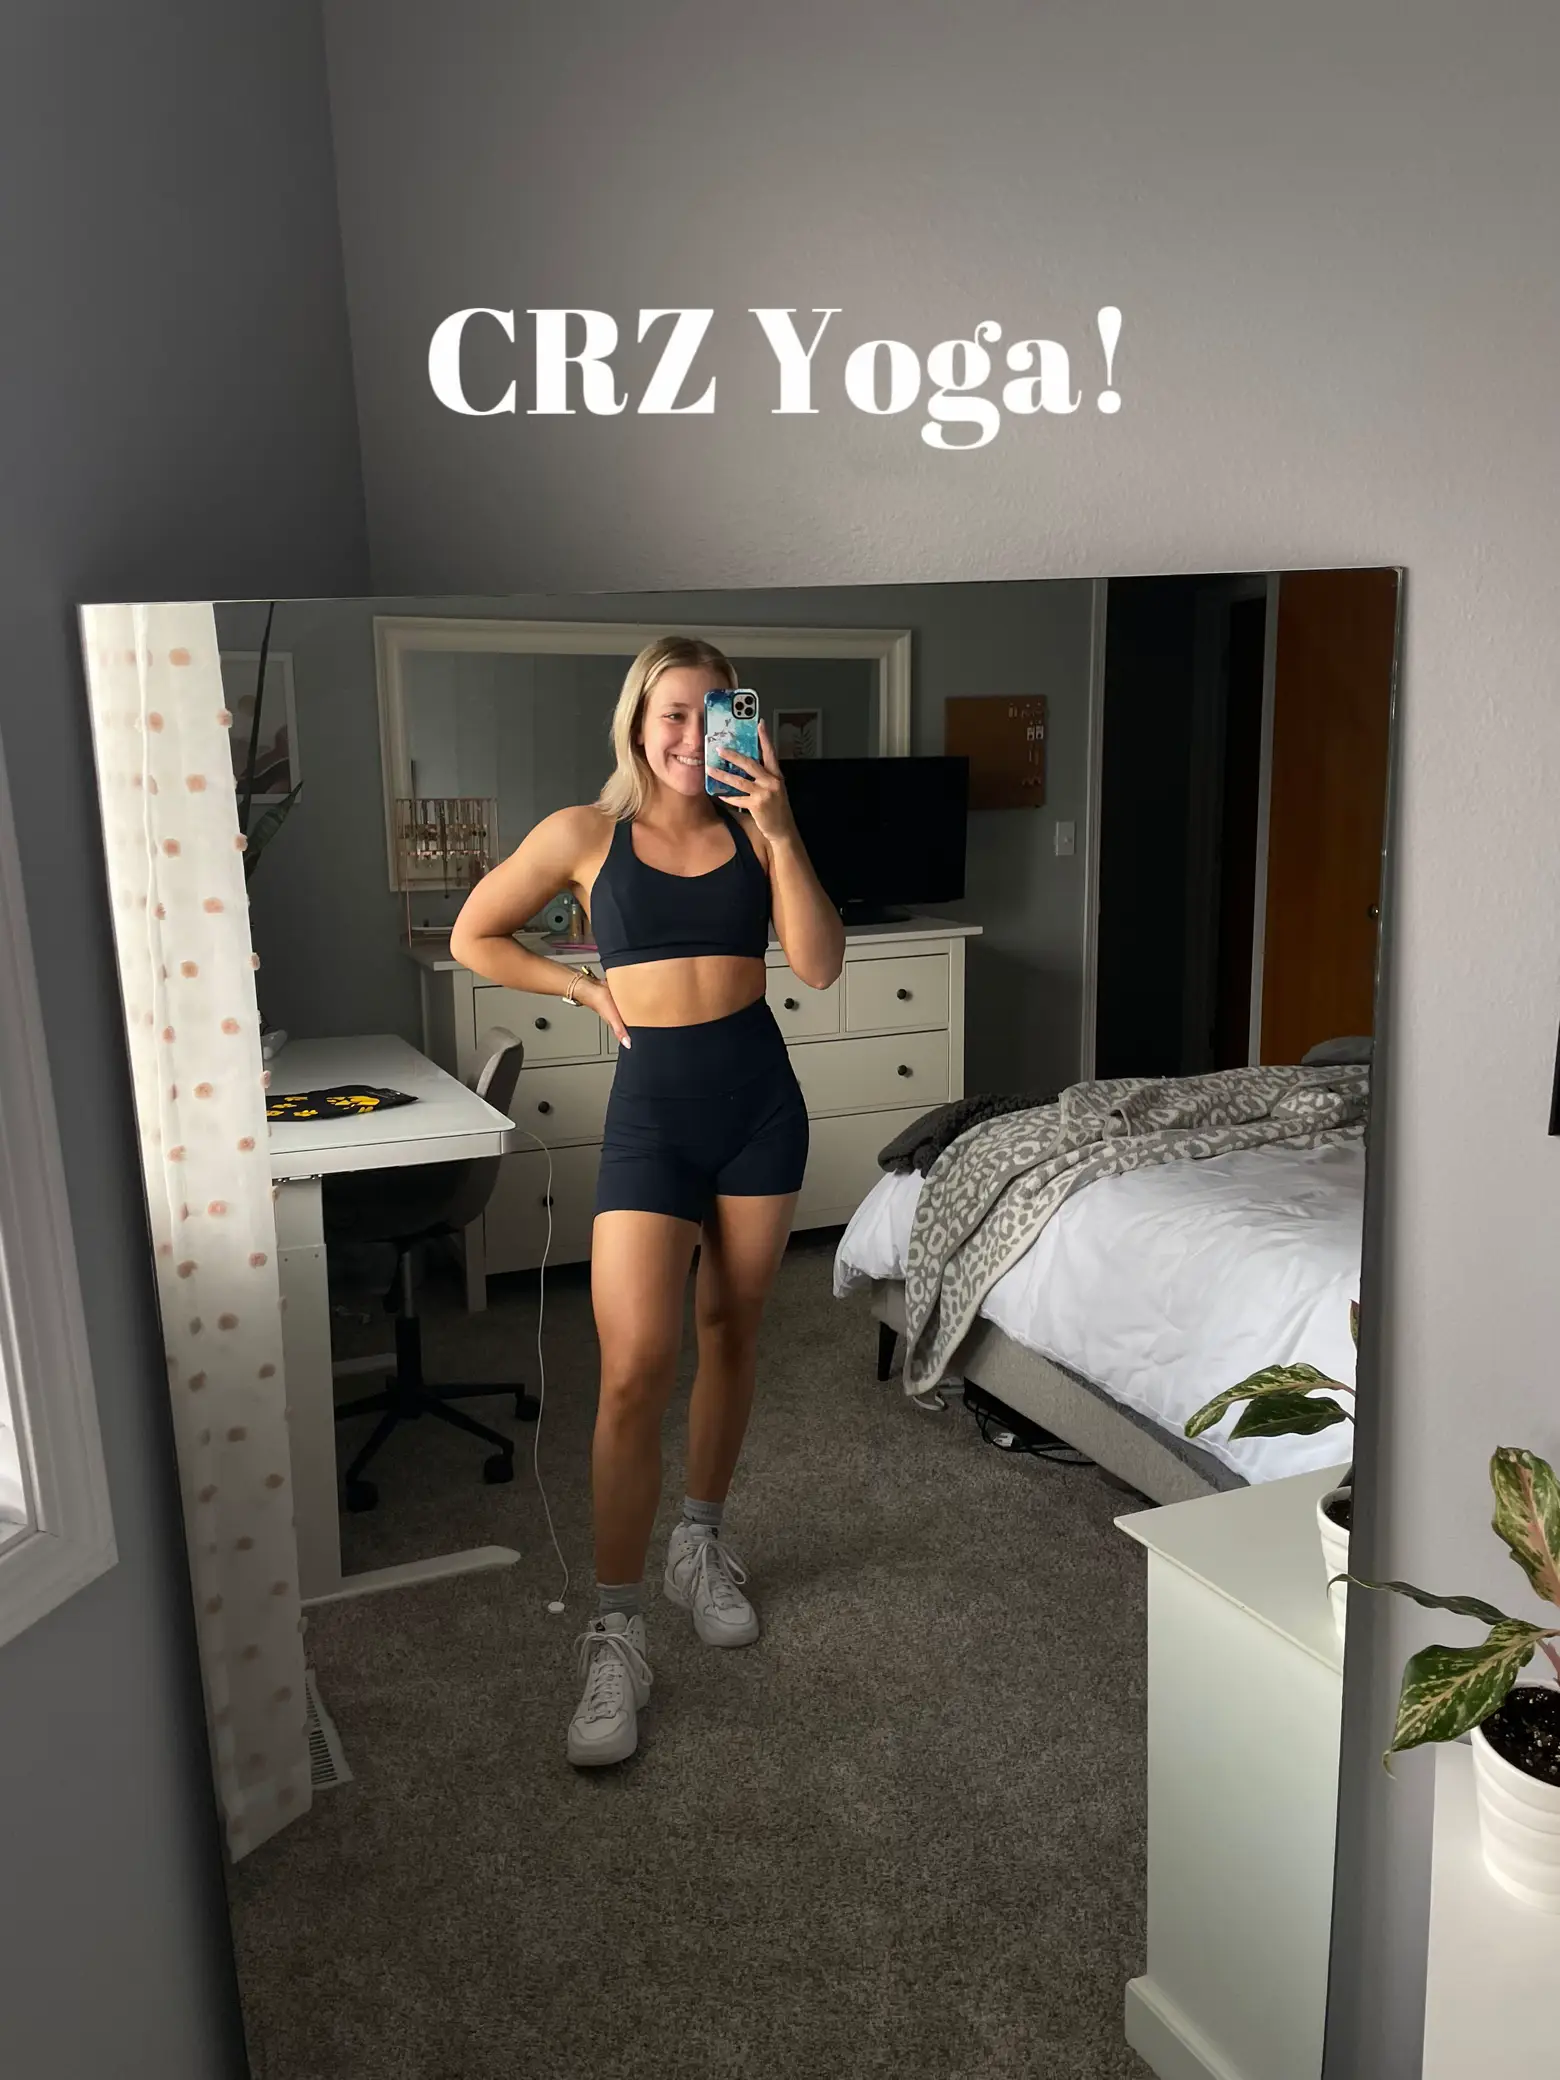 Crz Yoga - Lemon8 Search